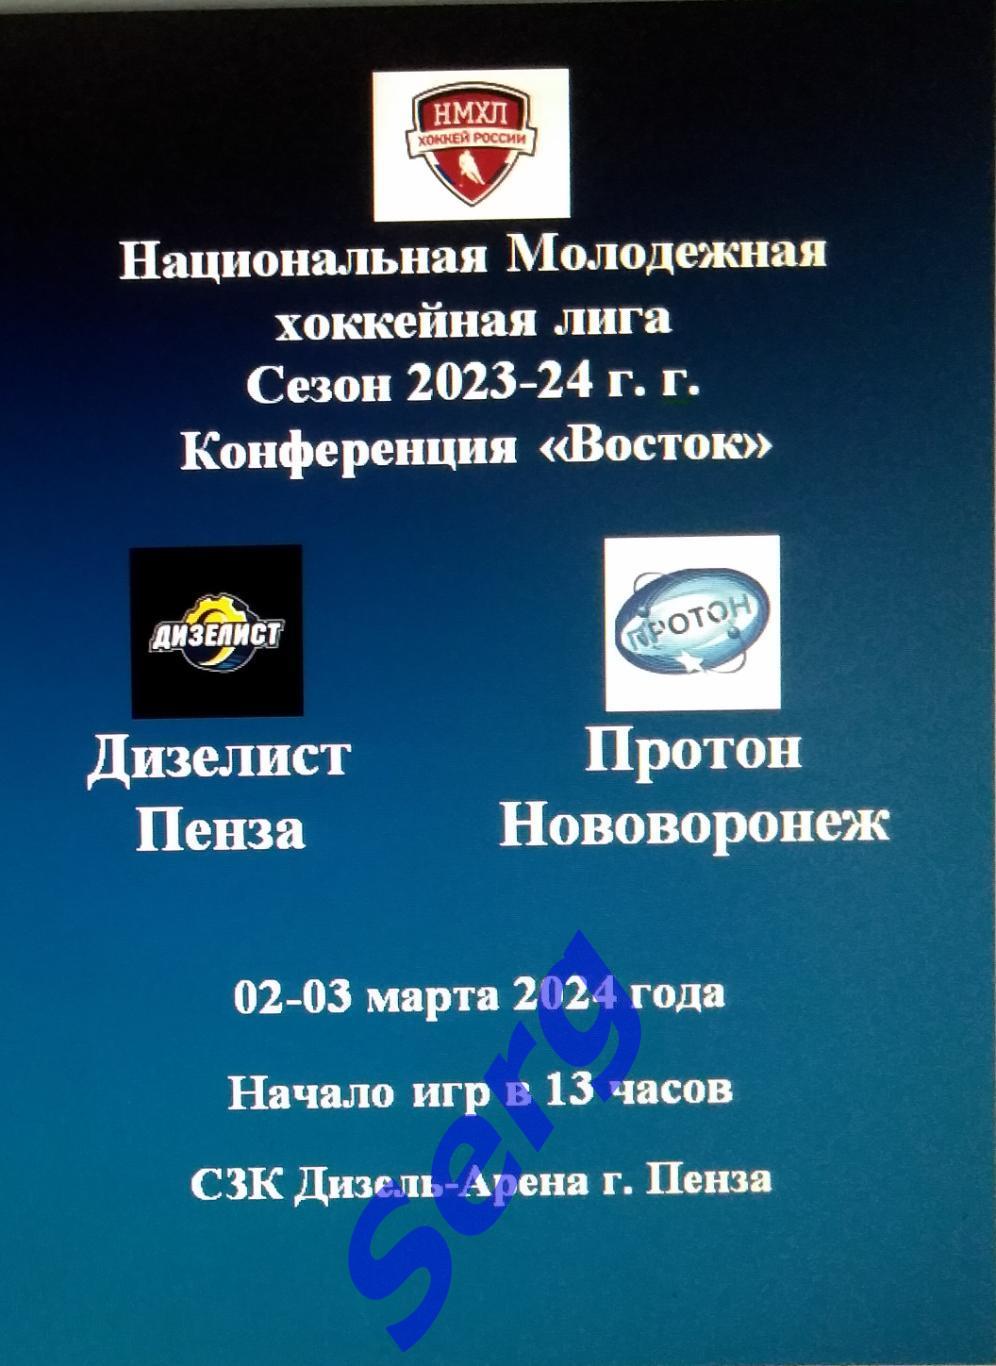 МХК Дизелист Пенза - Протон Нововоронеж - 02-03 марта 2024 год. НМХЛ